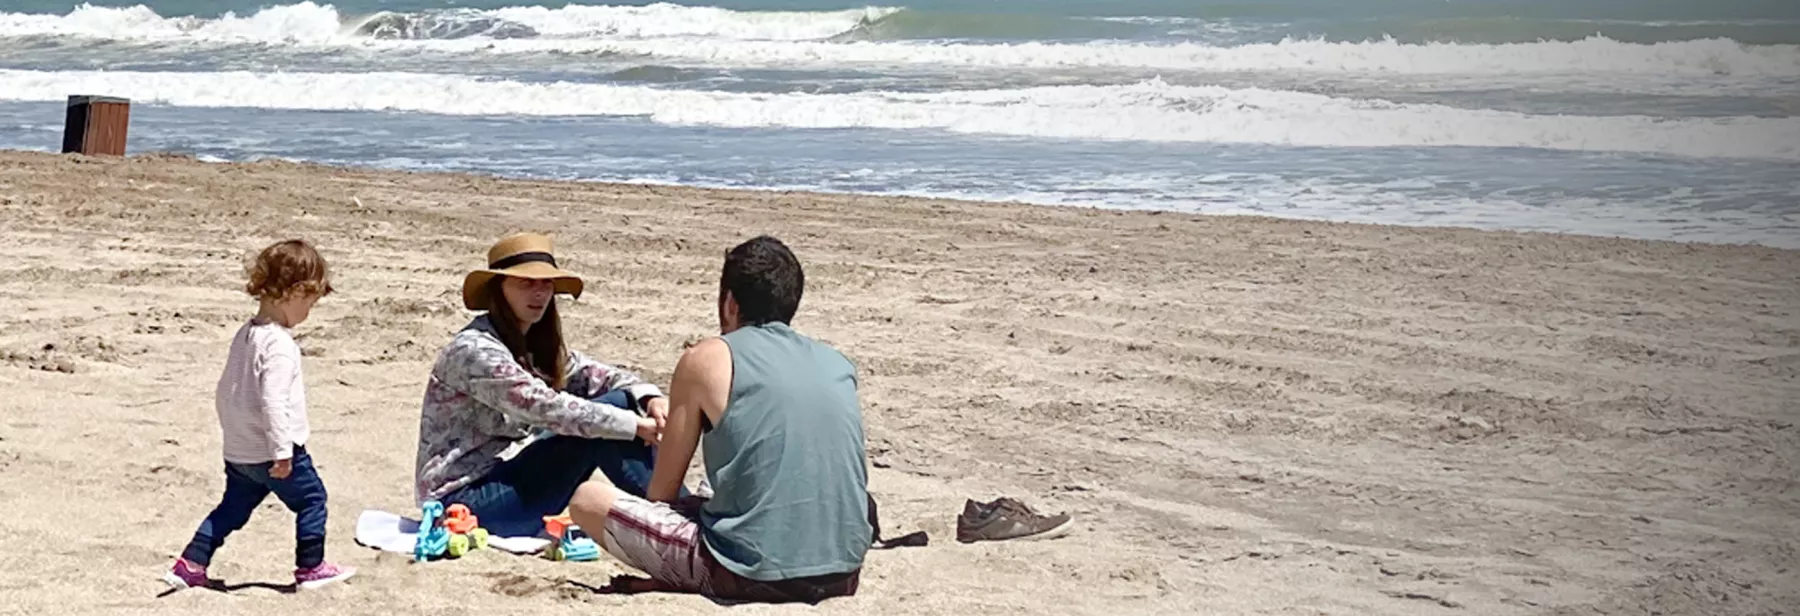 Escapadas de Semana Santa: 5 playas cercanas para relajarte en Pascuas